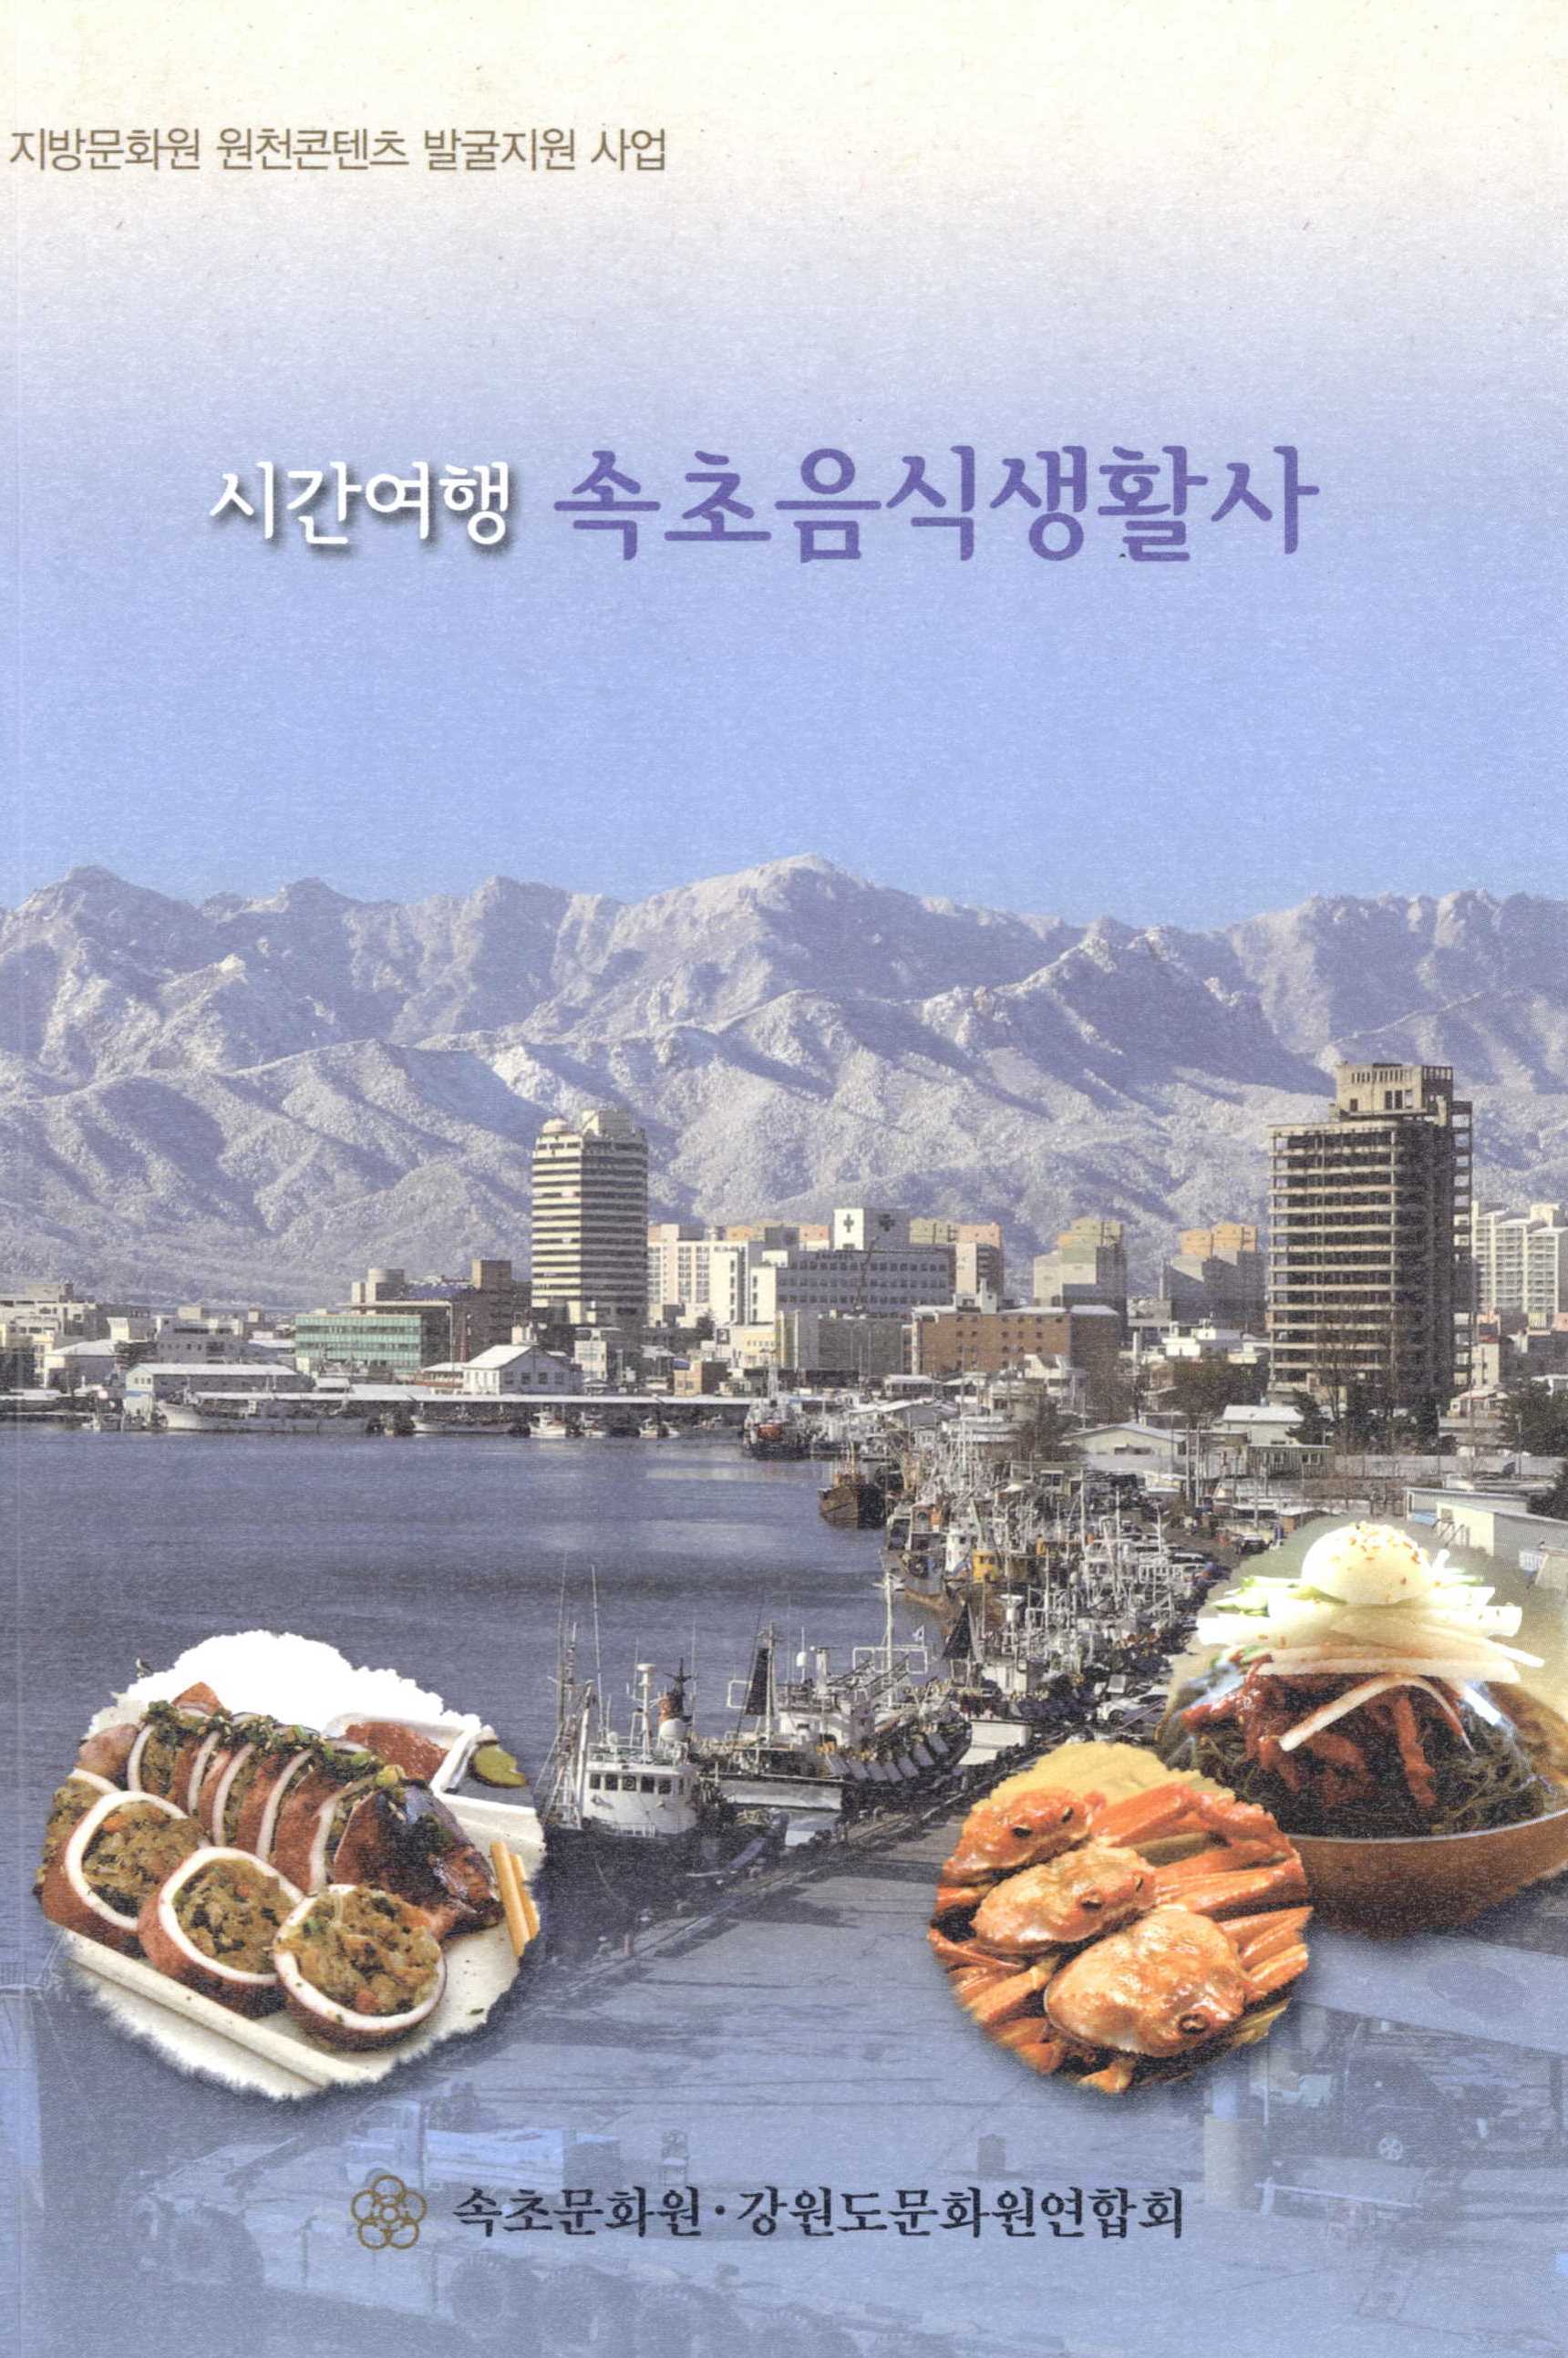 지방문화원 원천콘텐츠 발굴지원 사업. 시간여행 속초음식생활사